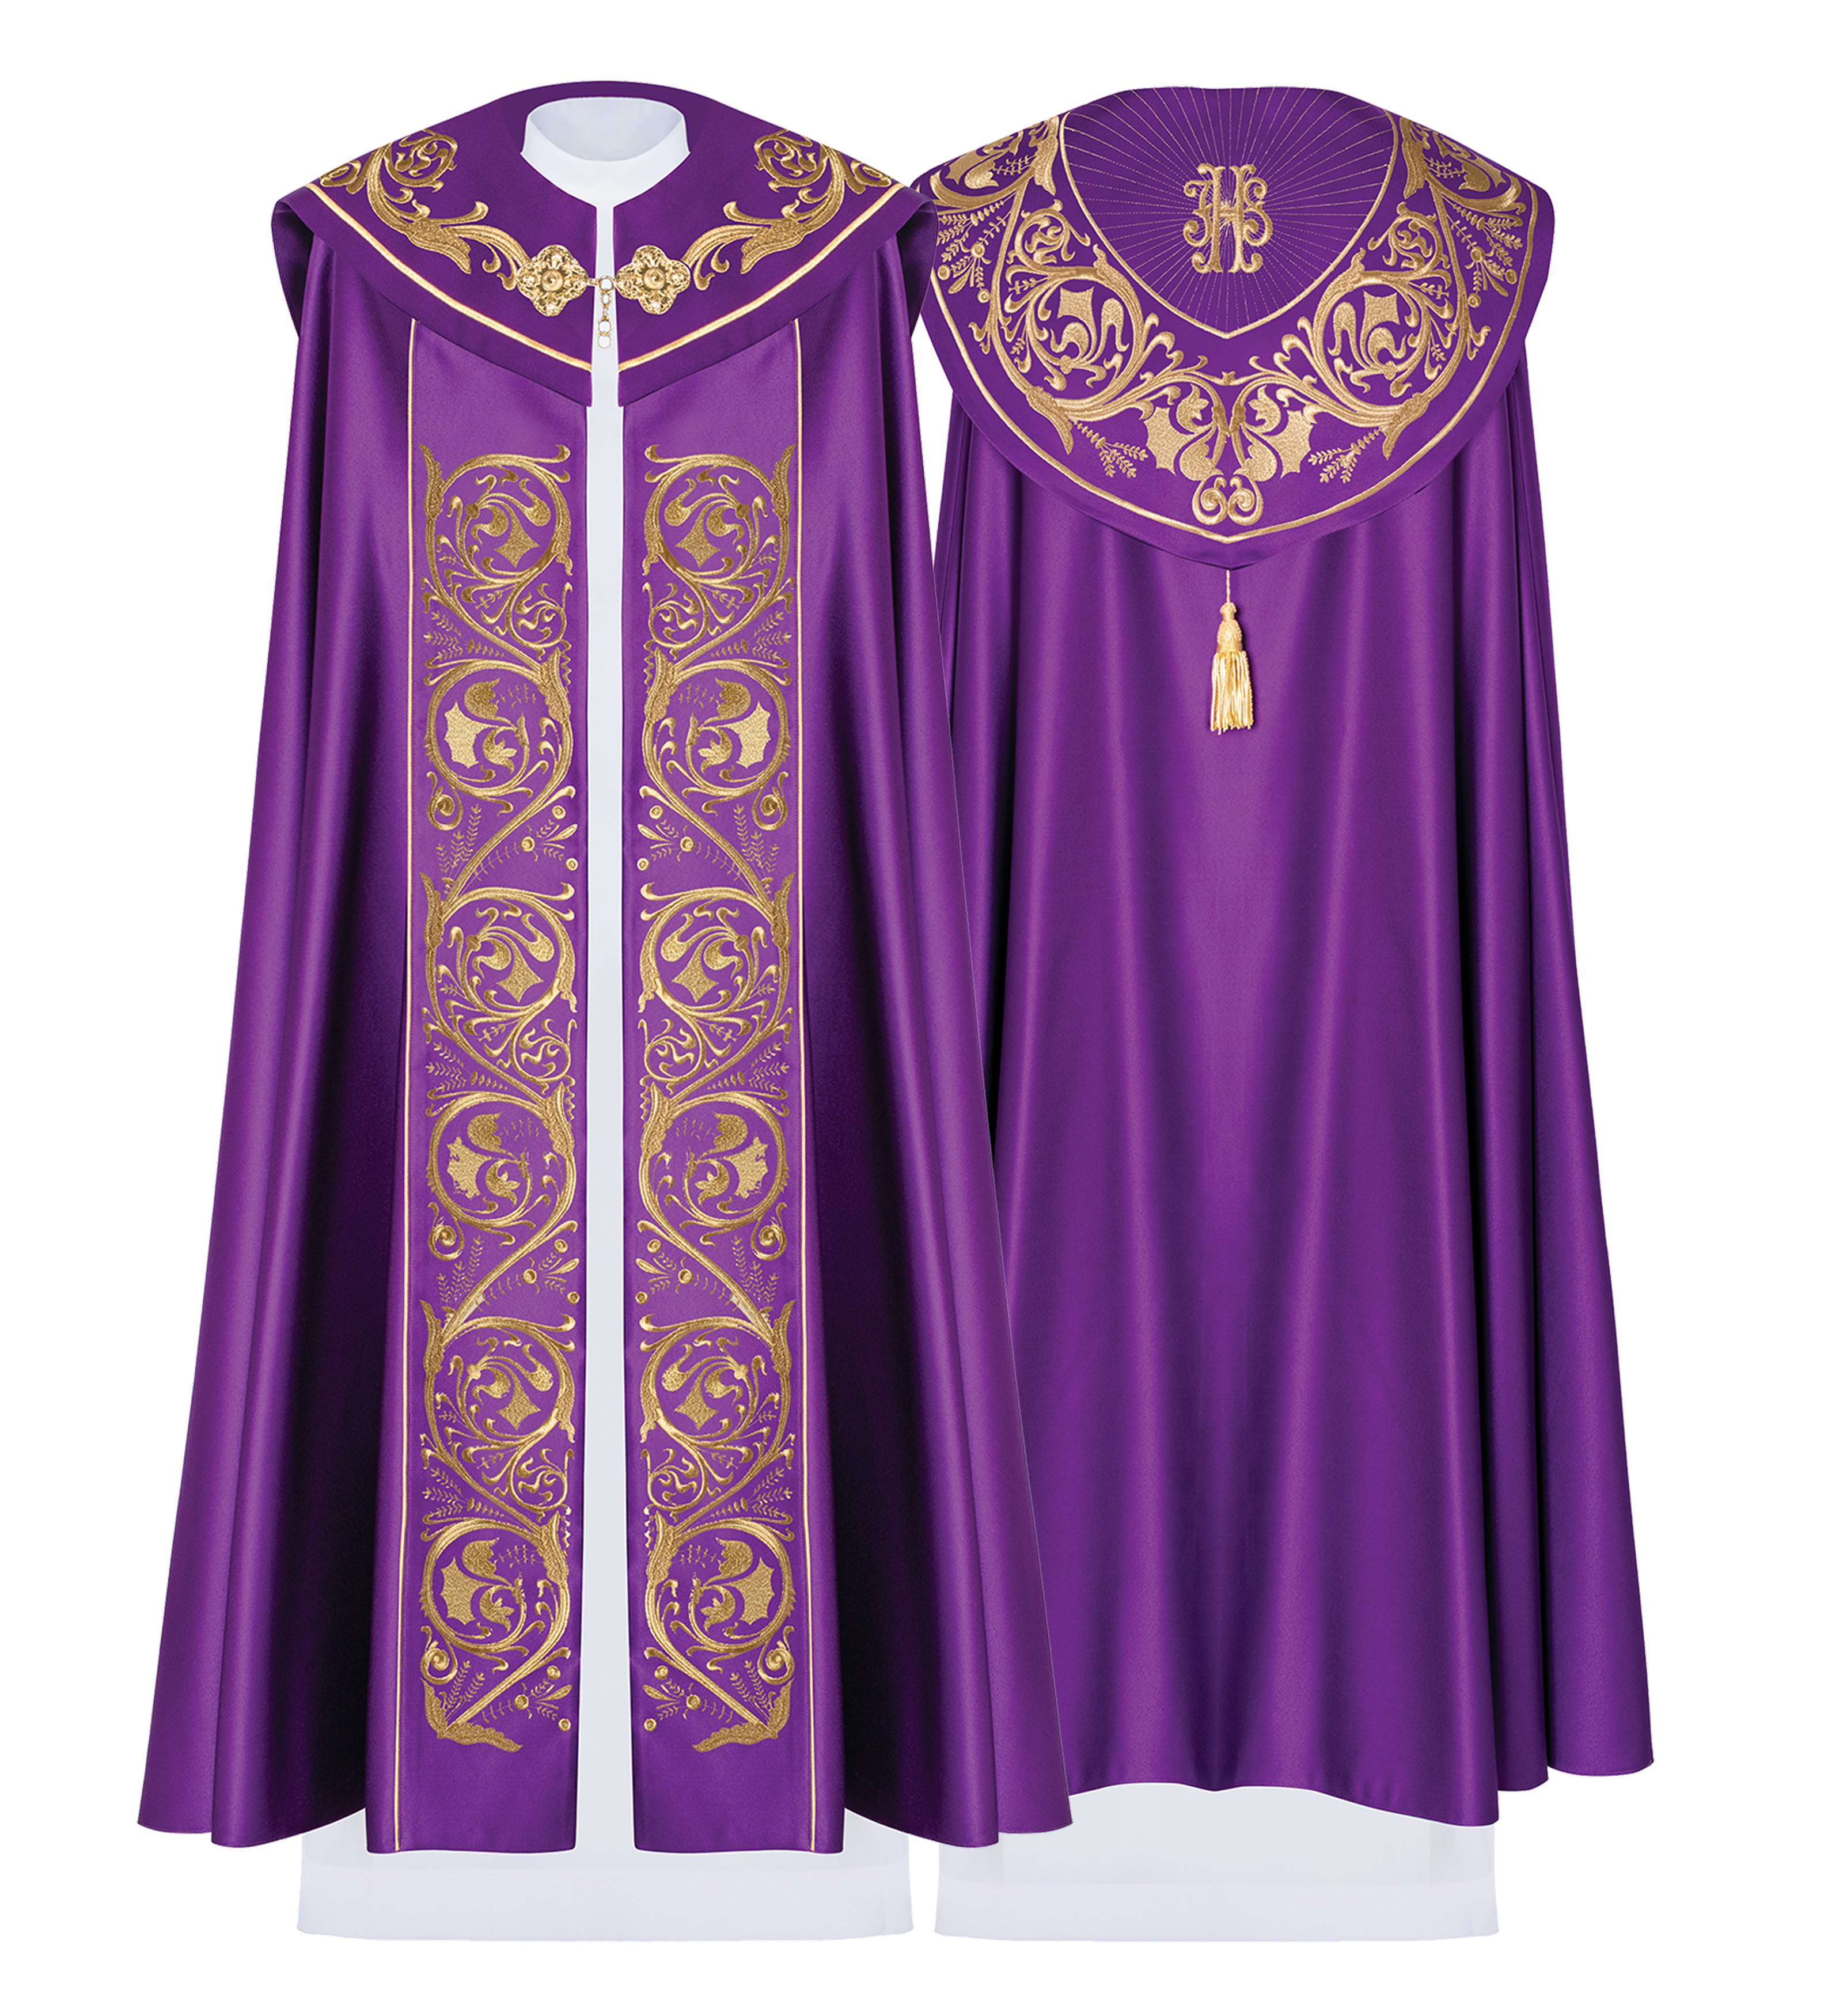 Fioletowa kapa liturgiczna z złotym monogramem IHS